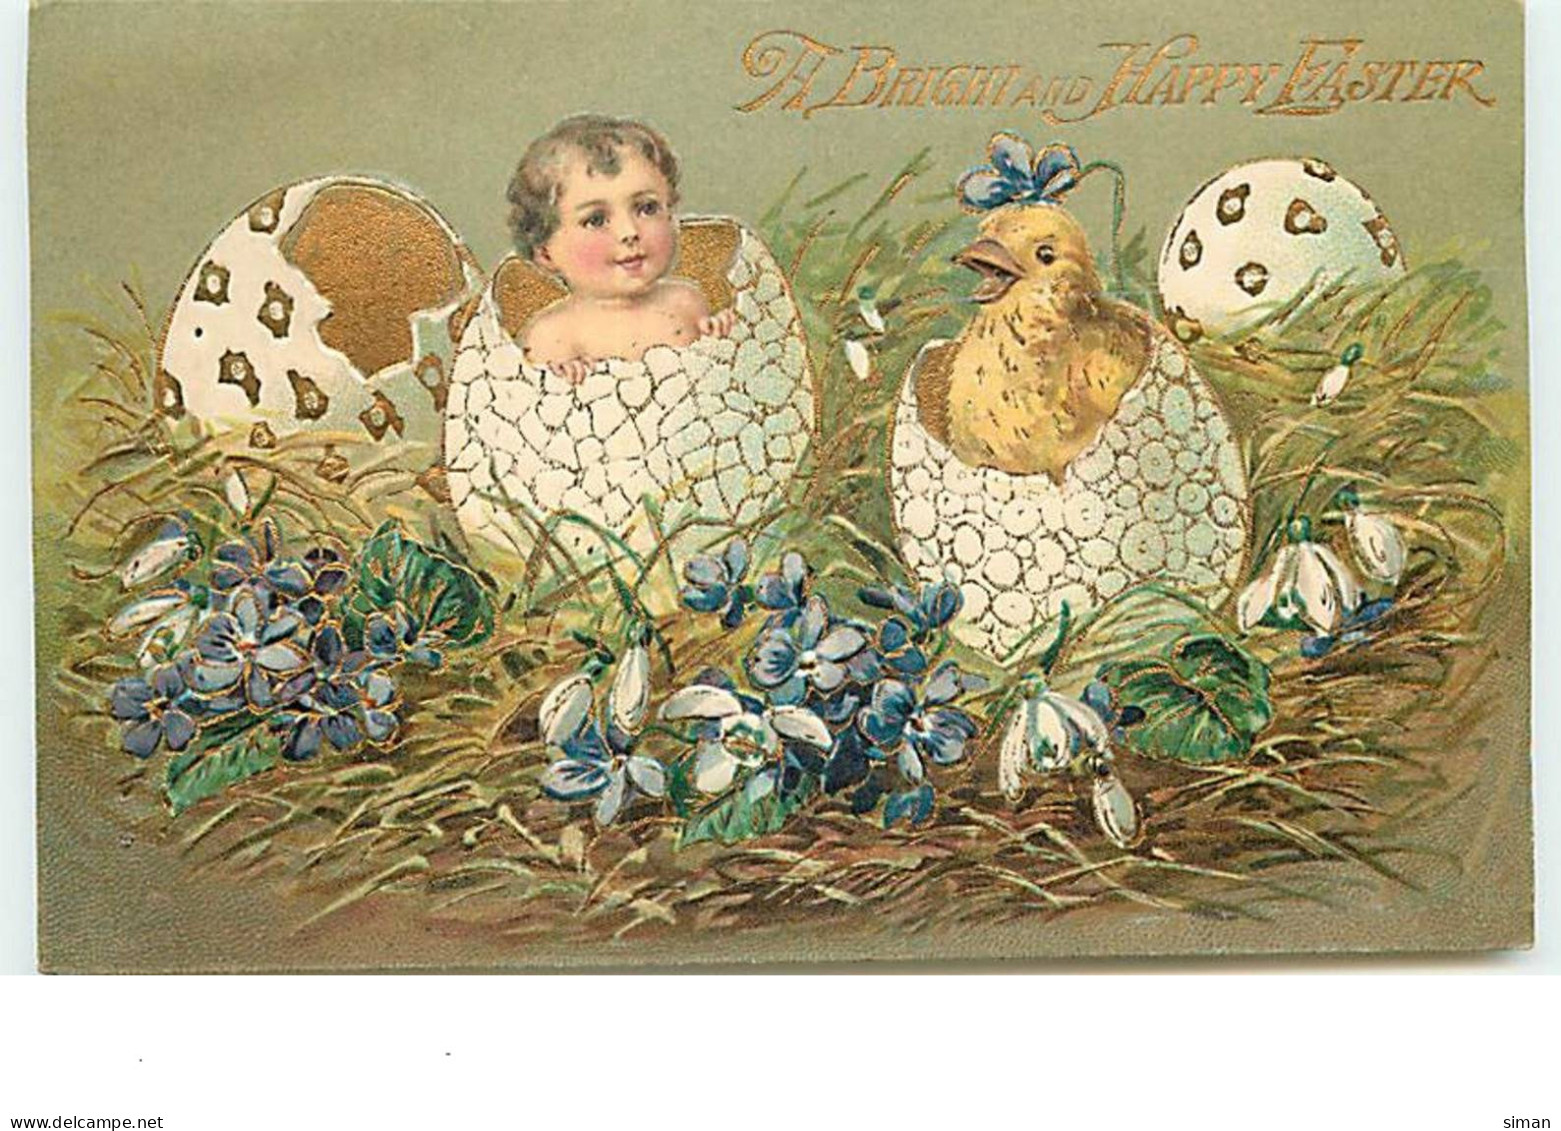 N°13718 - Carte Gaufrée - A Bright And Happy Easter - Bébé Et Poussin Sortant D'oeufs - Easter